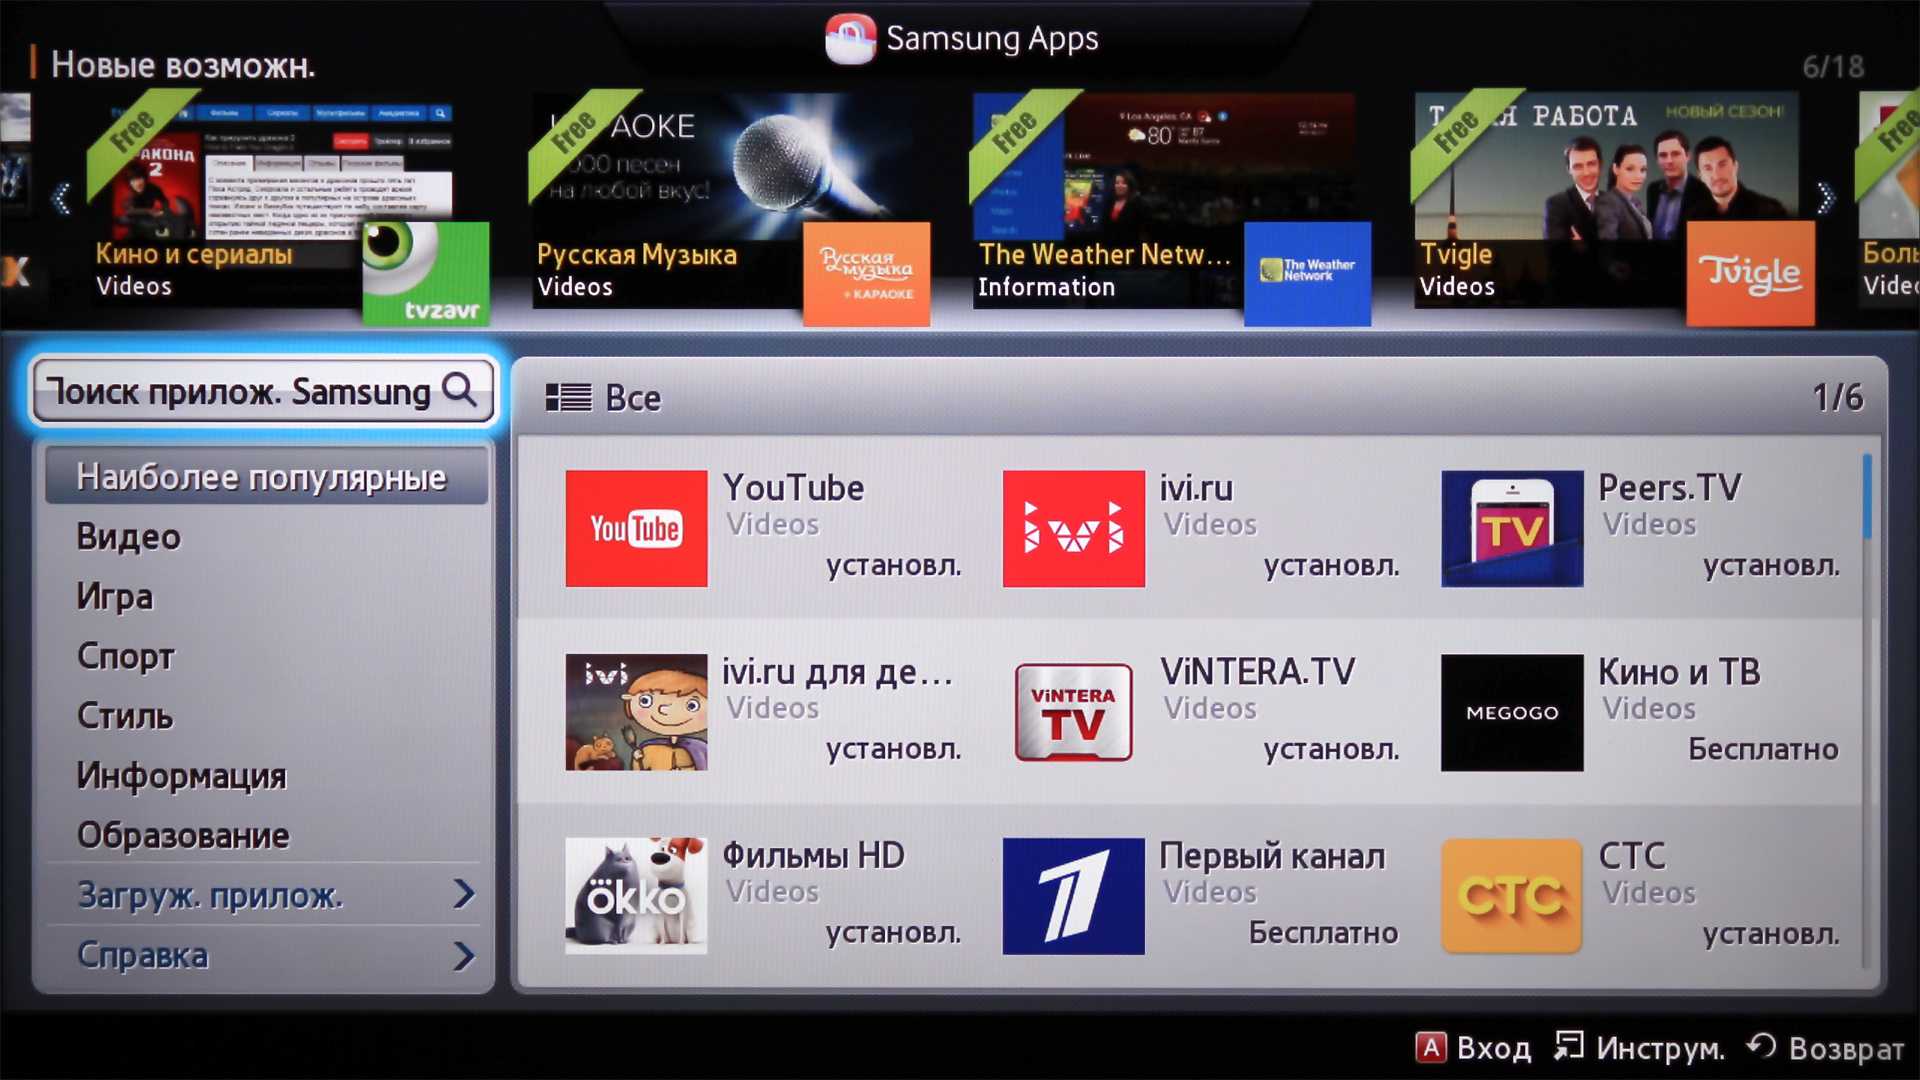 Приложение для телевизора для просмотра видео. Samsung Smart TV (Orsay). Samsung Orsay 2014 телевизор. Samsung apps для Smart TV. Samsung Smart TV 2014.